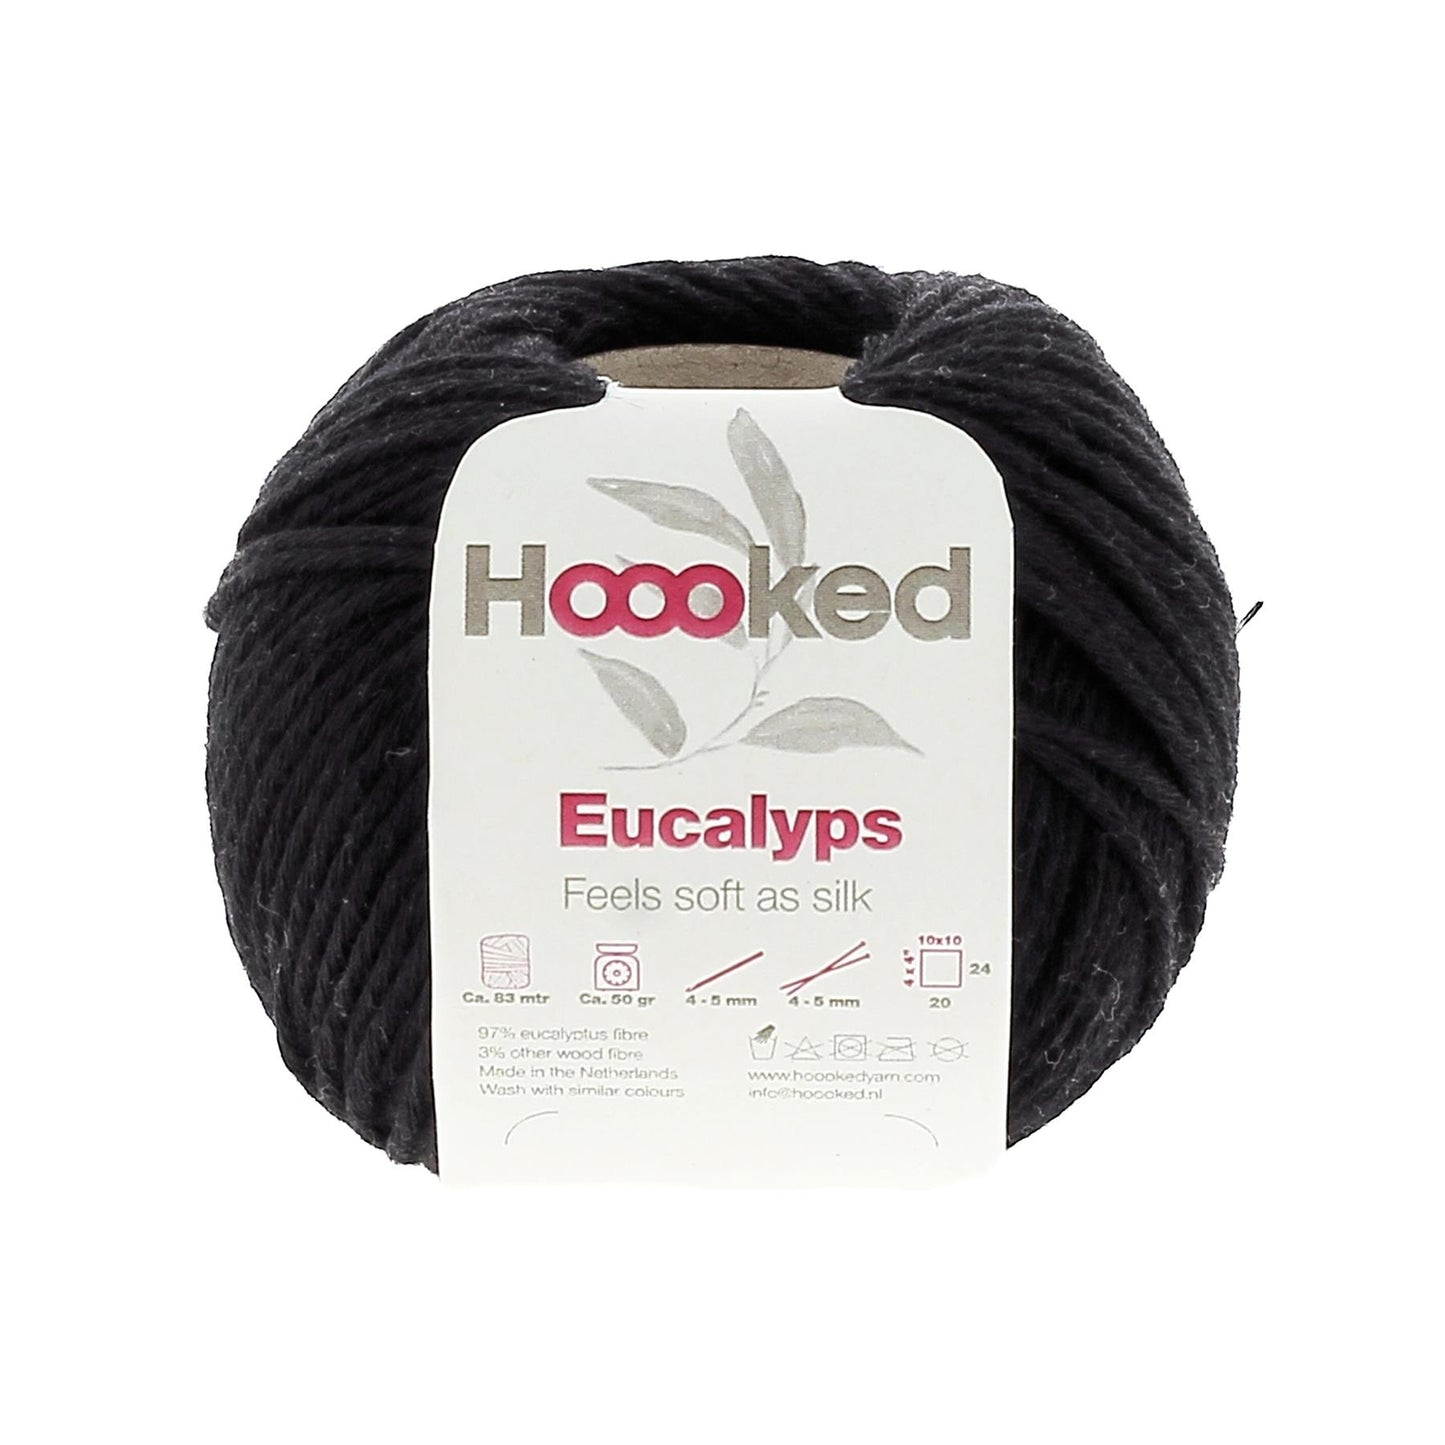 [Hoooked] EC1150G Eucalyps Neroni Black Eucalyptus Yarn - 82.5M, 50g